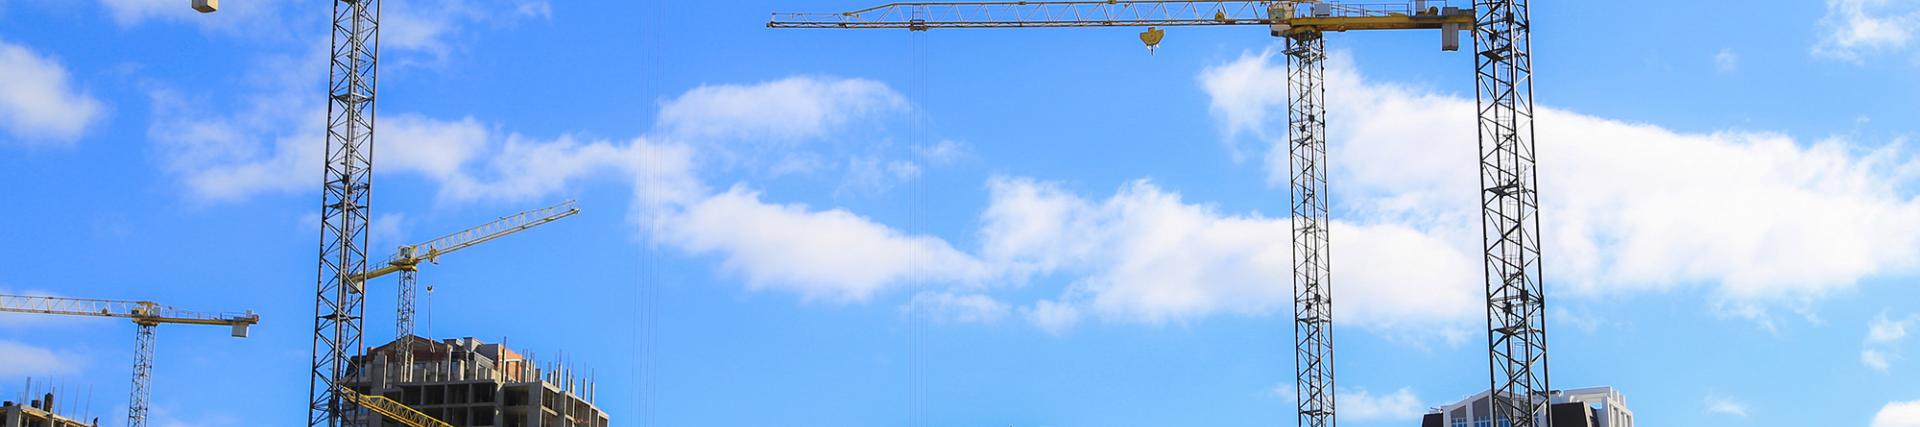 Cranes above a city